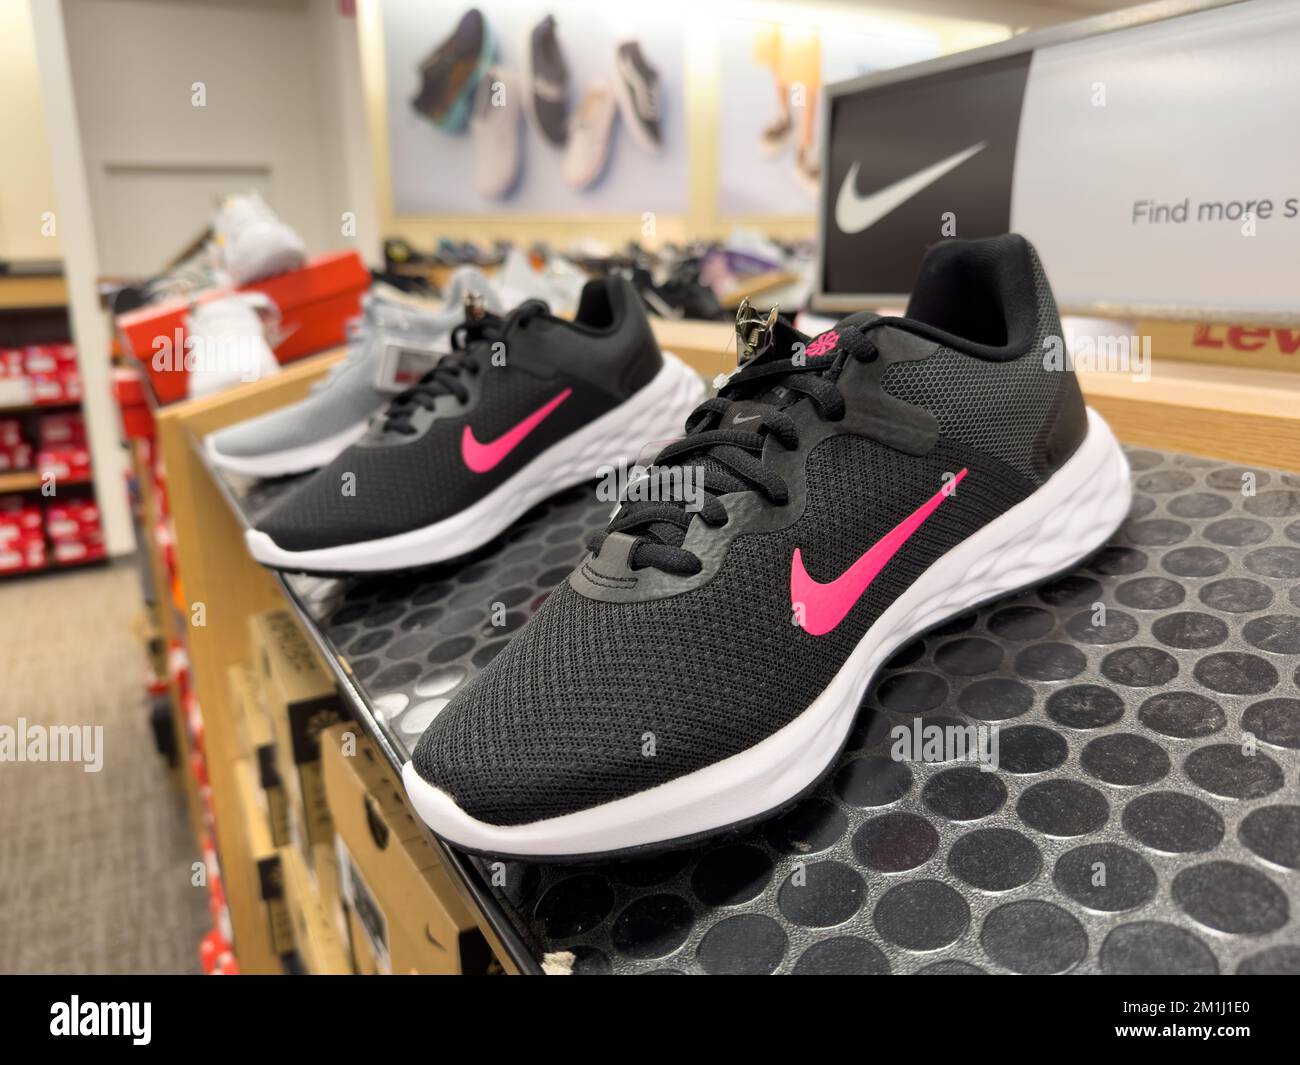 Nike Sportschuhe werden im Regal des Geschäfts ausgestellt Stockfoto